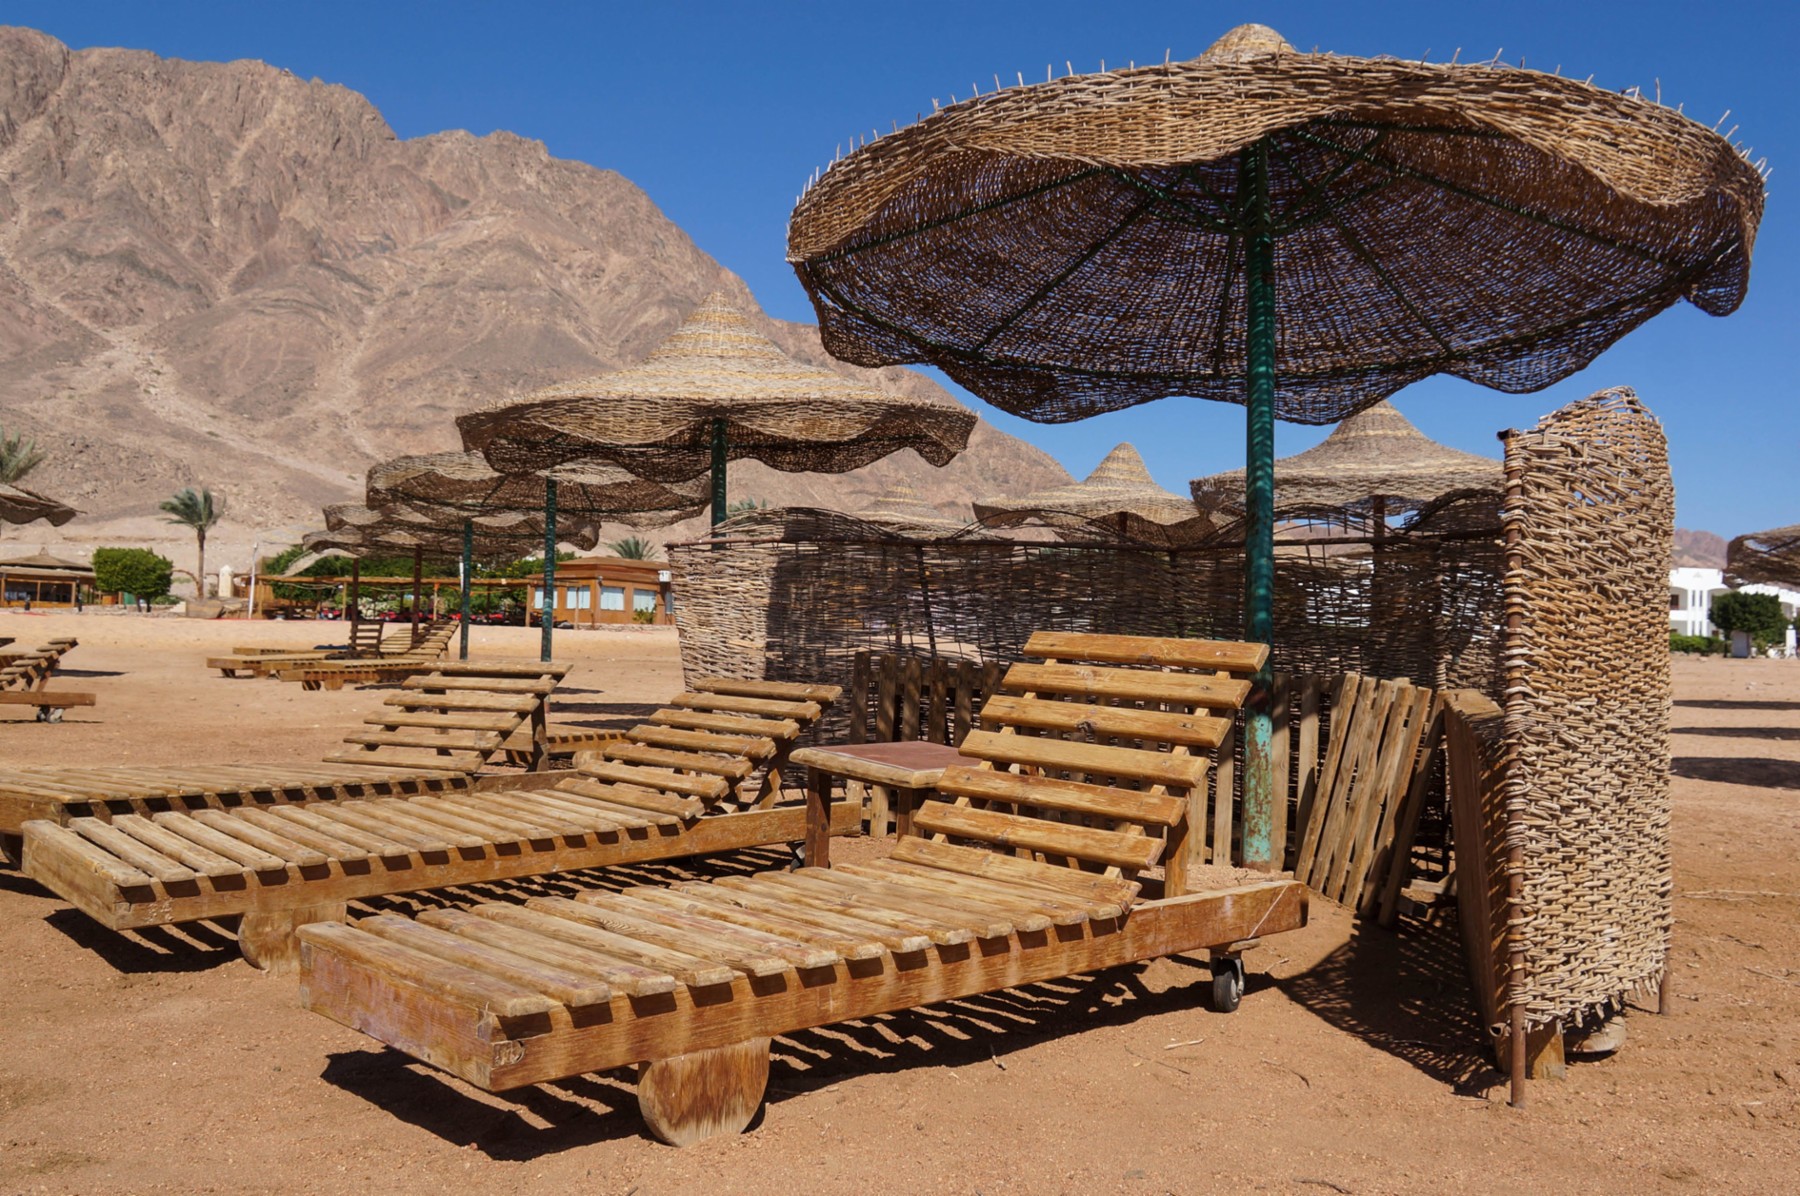 Leere Liegestühle: Nach der Verschärfung des Reisehinweises für die Sinai-Halbinsel kommen kaum noch Touristen nach Dahab.